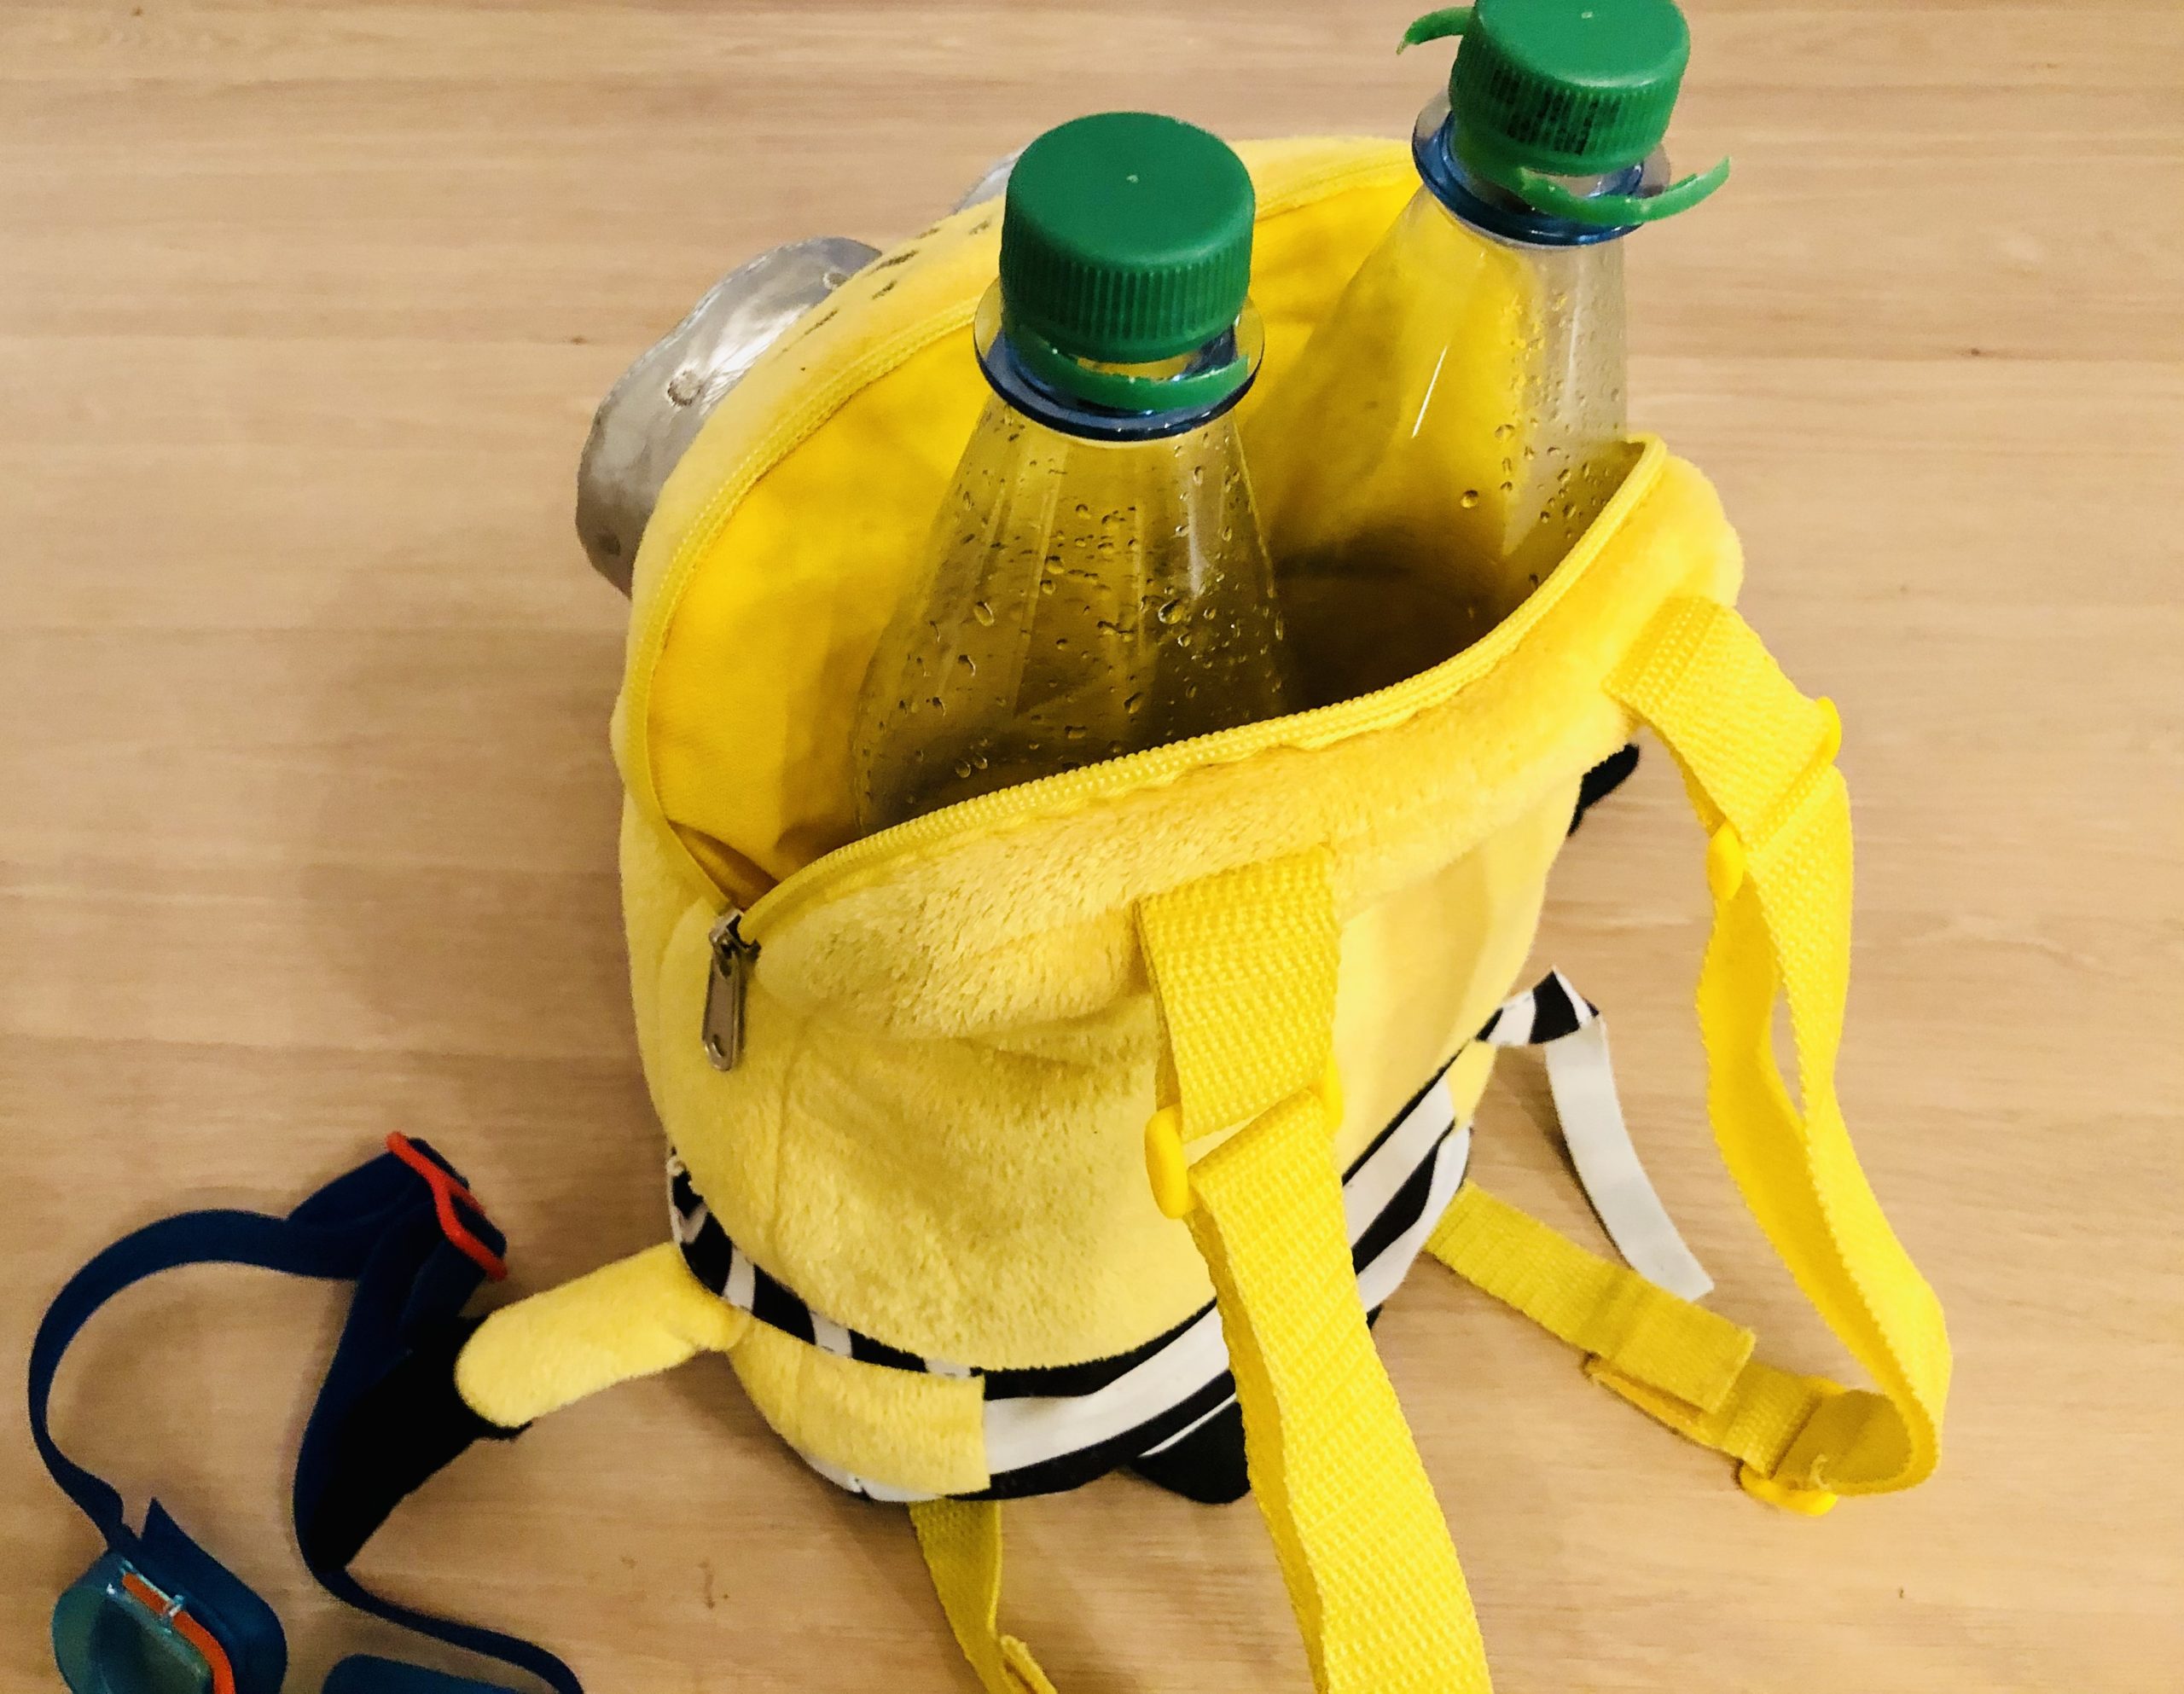 Bild zum Schritt 2 für das Bastel- und DIY-Abenteuer für Kinder: 'Dann stellt ihr die leeren Flaschen in den Rucksack. Lasst...'